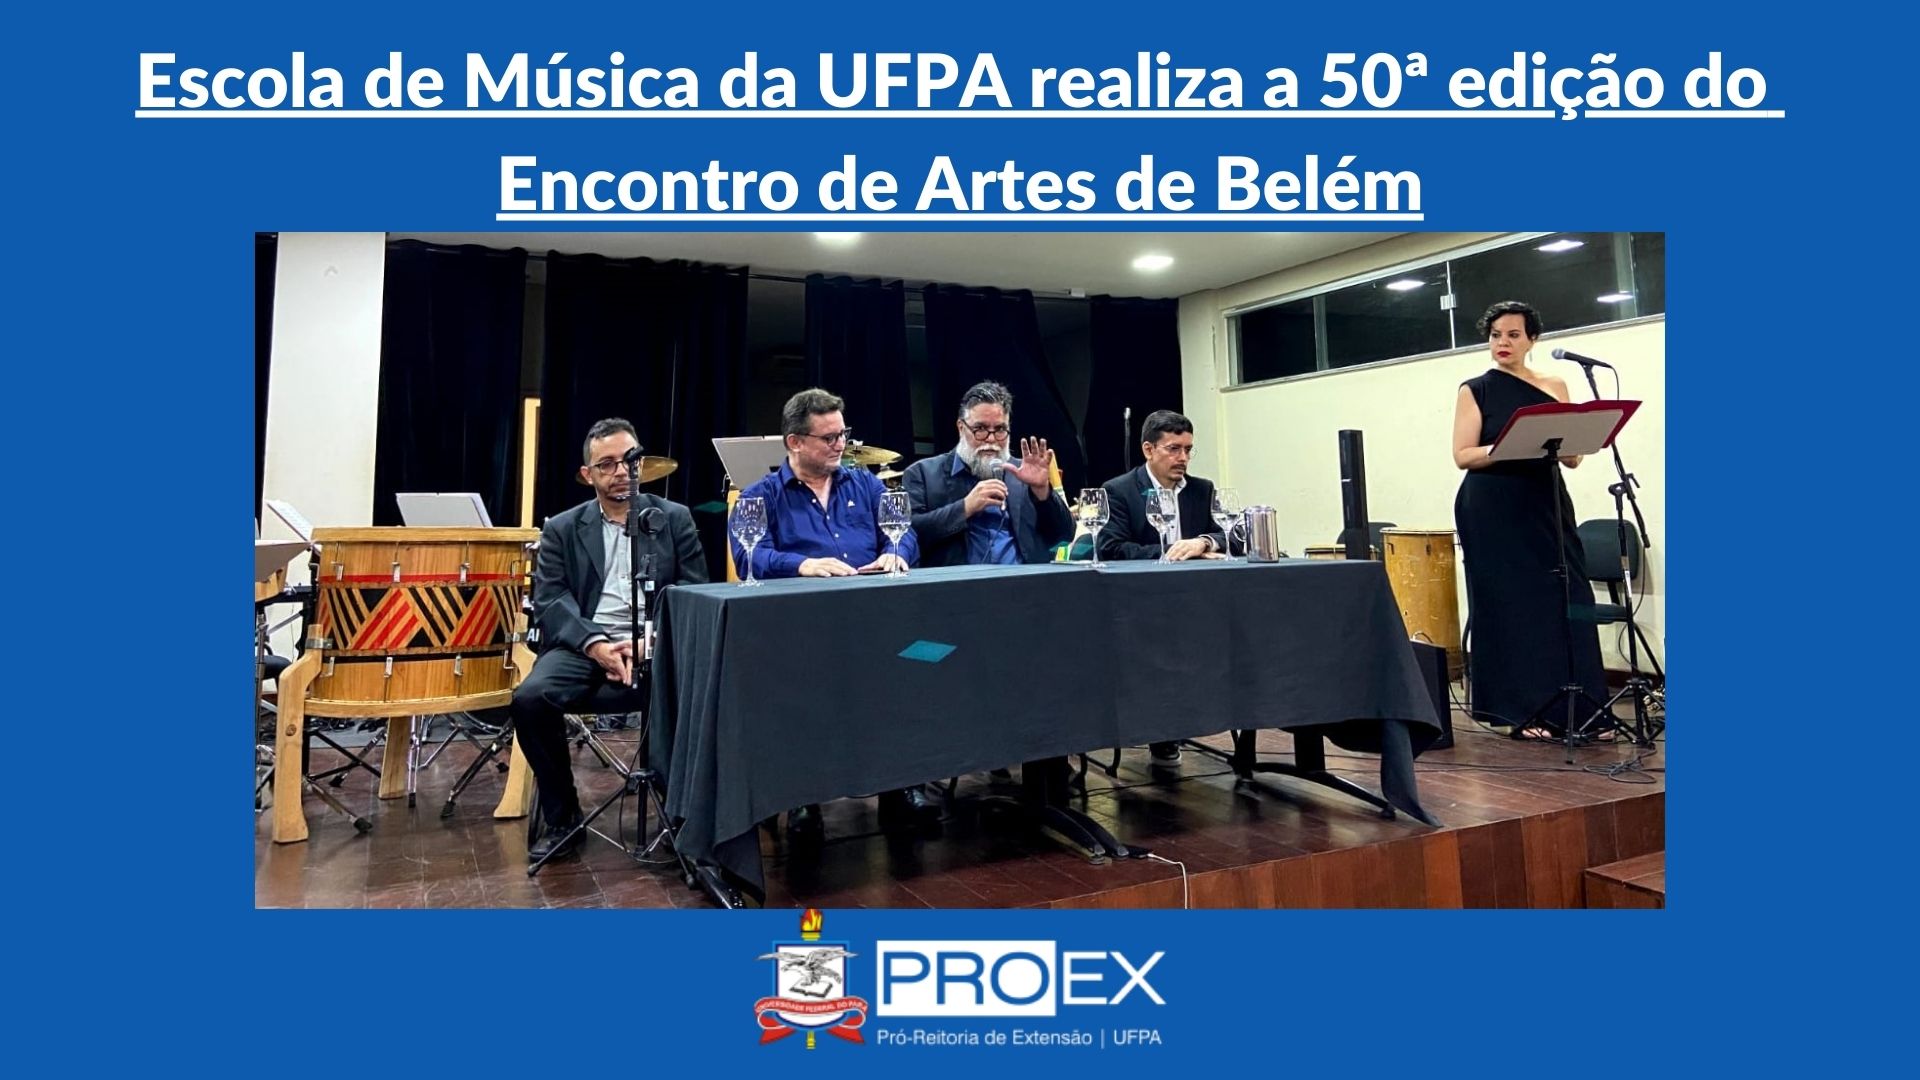 Escola de Música da UFPA realiza a 50ª edição do Encontro de Artes de Belém